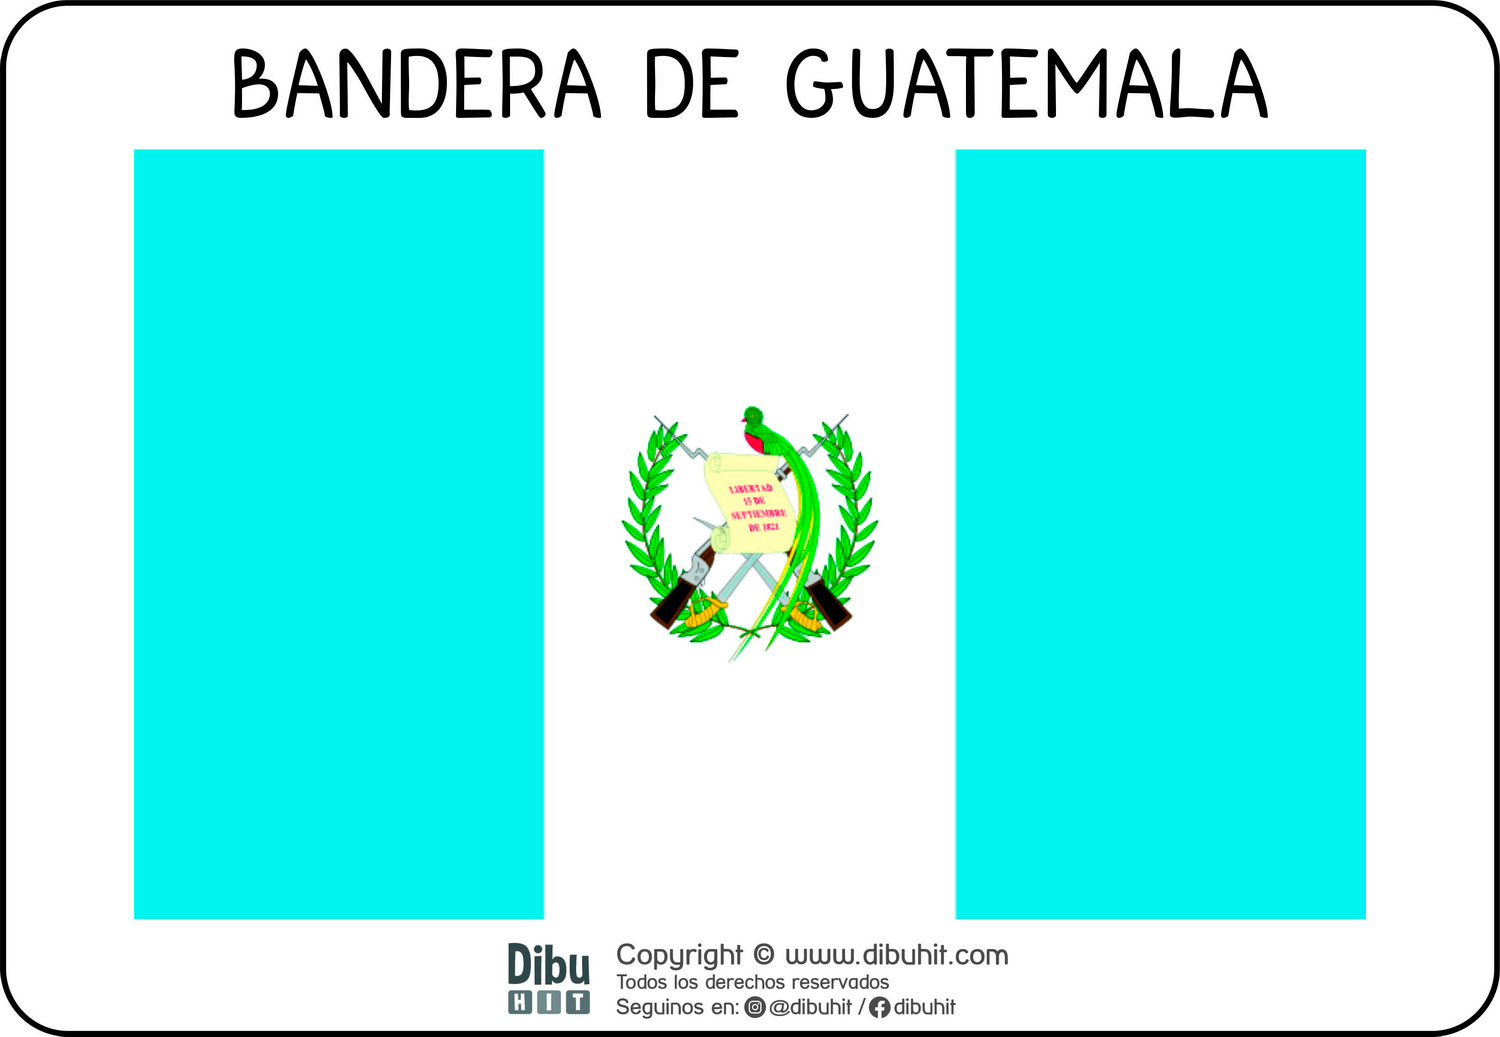 Lamina didactica bandera de Guatemala a colores